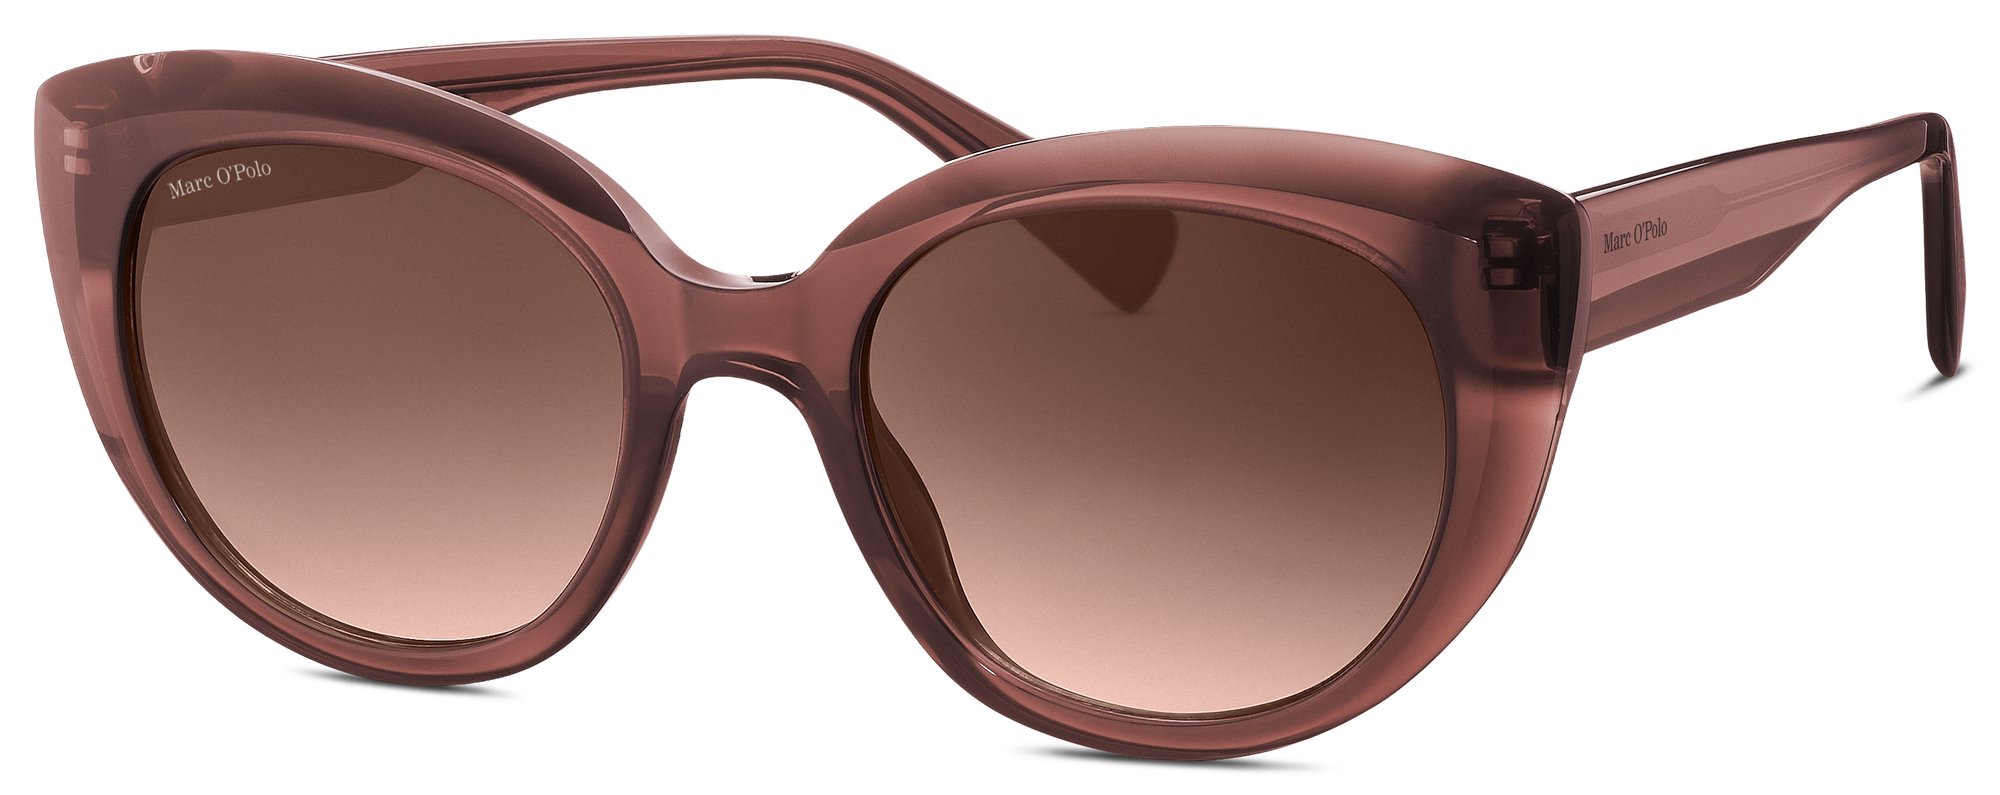 Das Bild zeigt die Sonnenbrille 506195 65 von der Marke Marc O‘Polo in braun transparent.